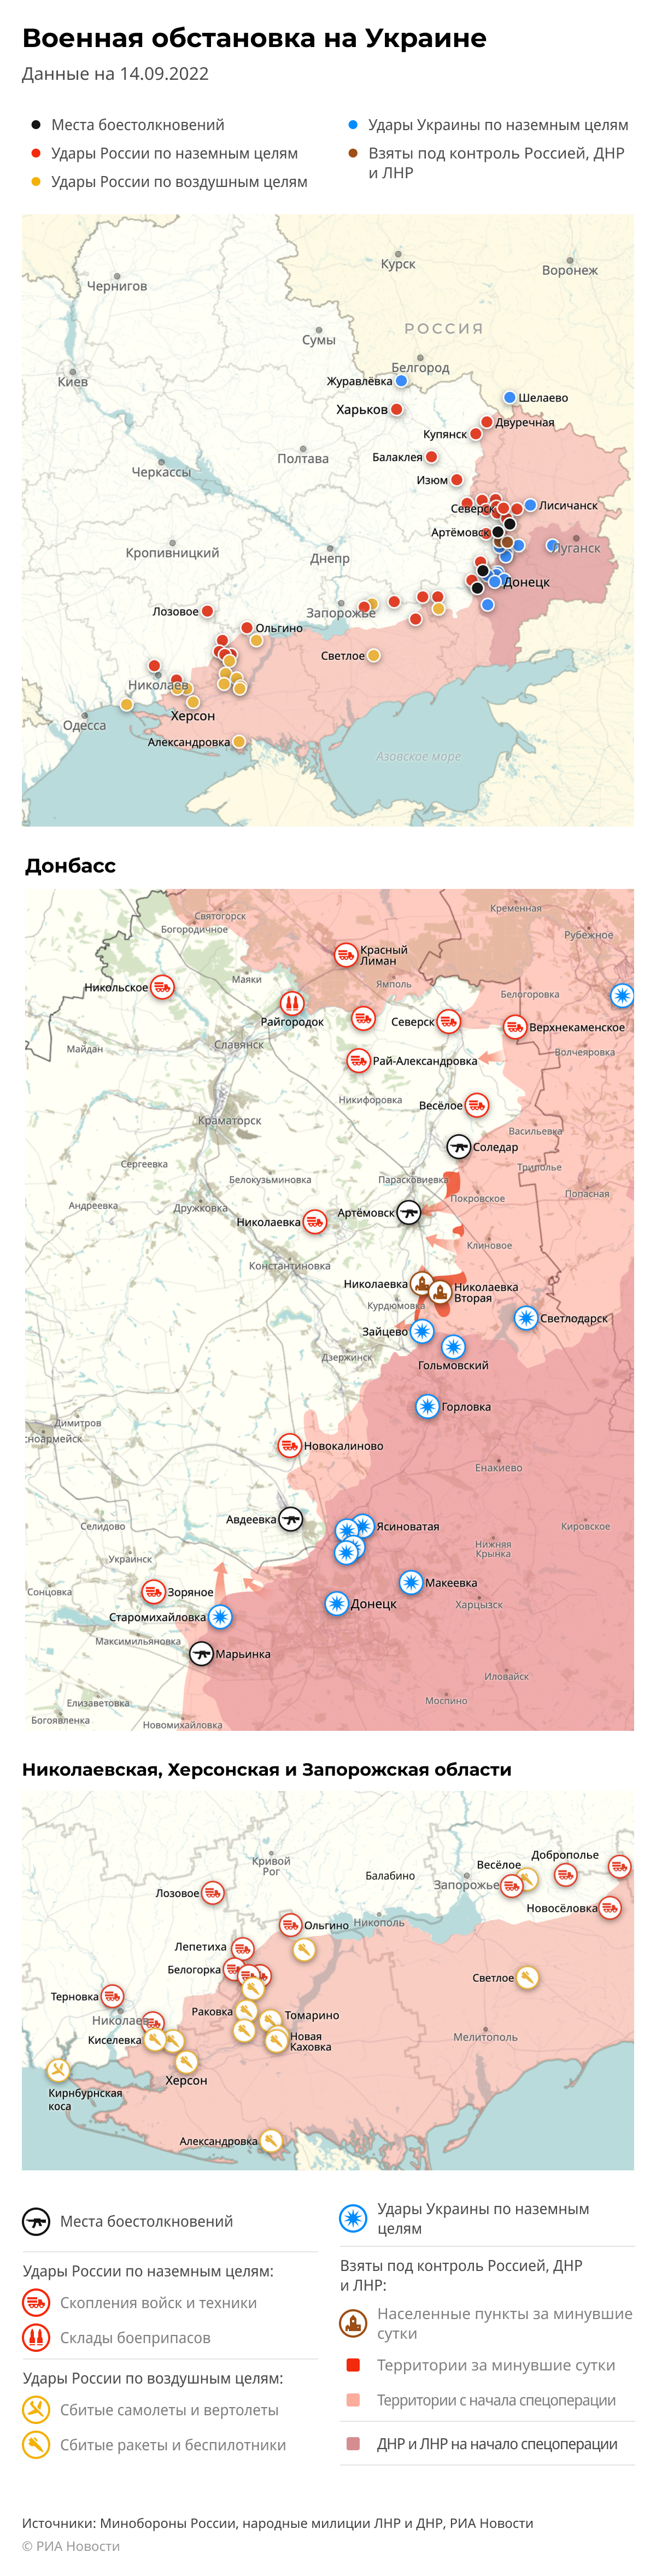 Карта спецоперации Вооруженных сил России на Украине на 14.09.2022